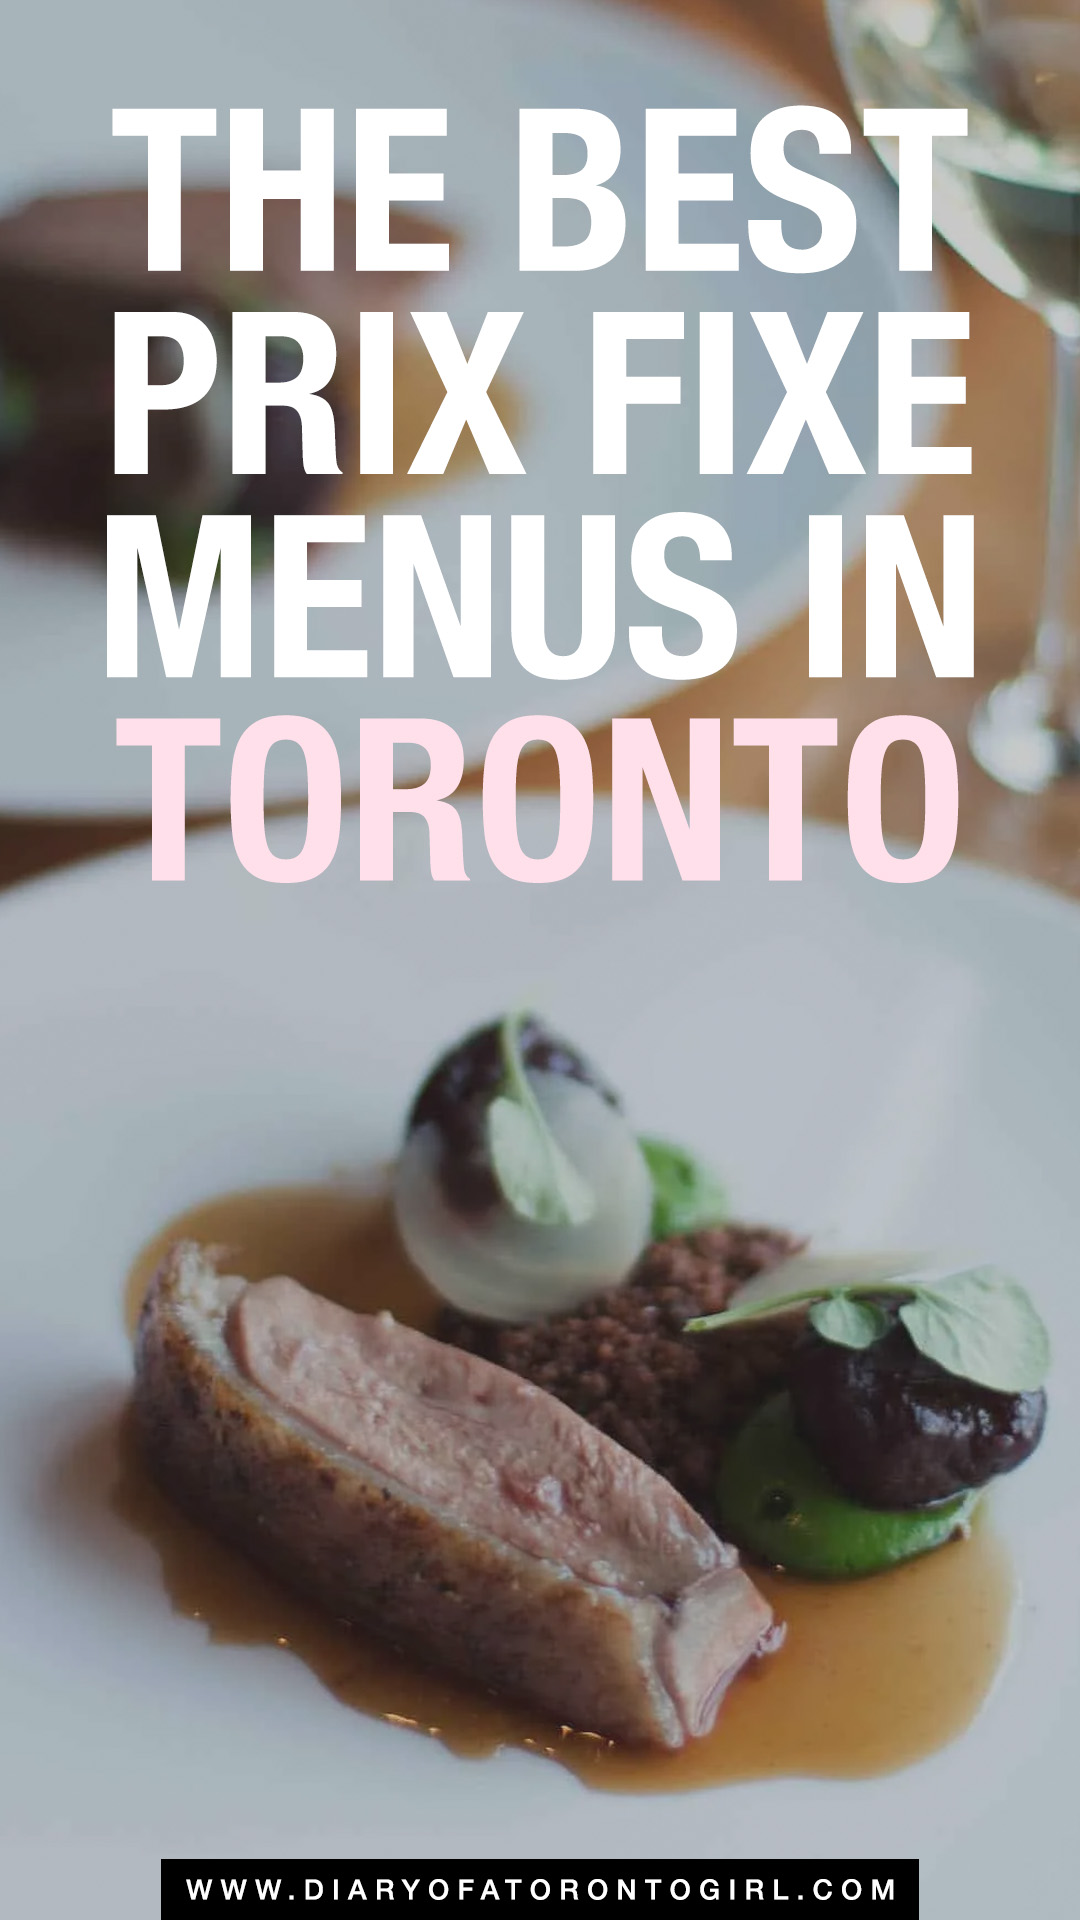 Best prix fixe menus in Toronto